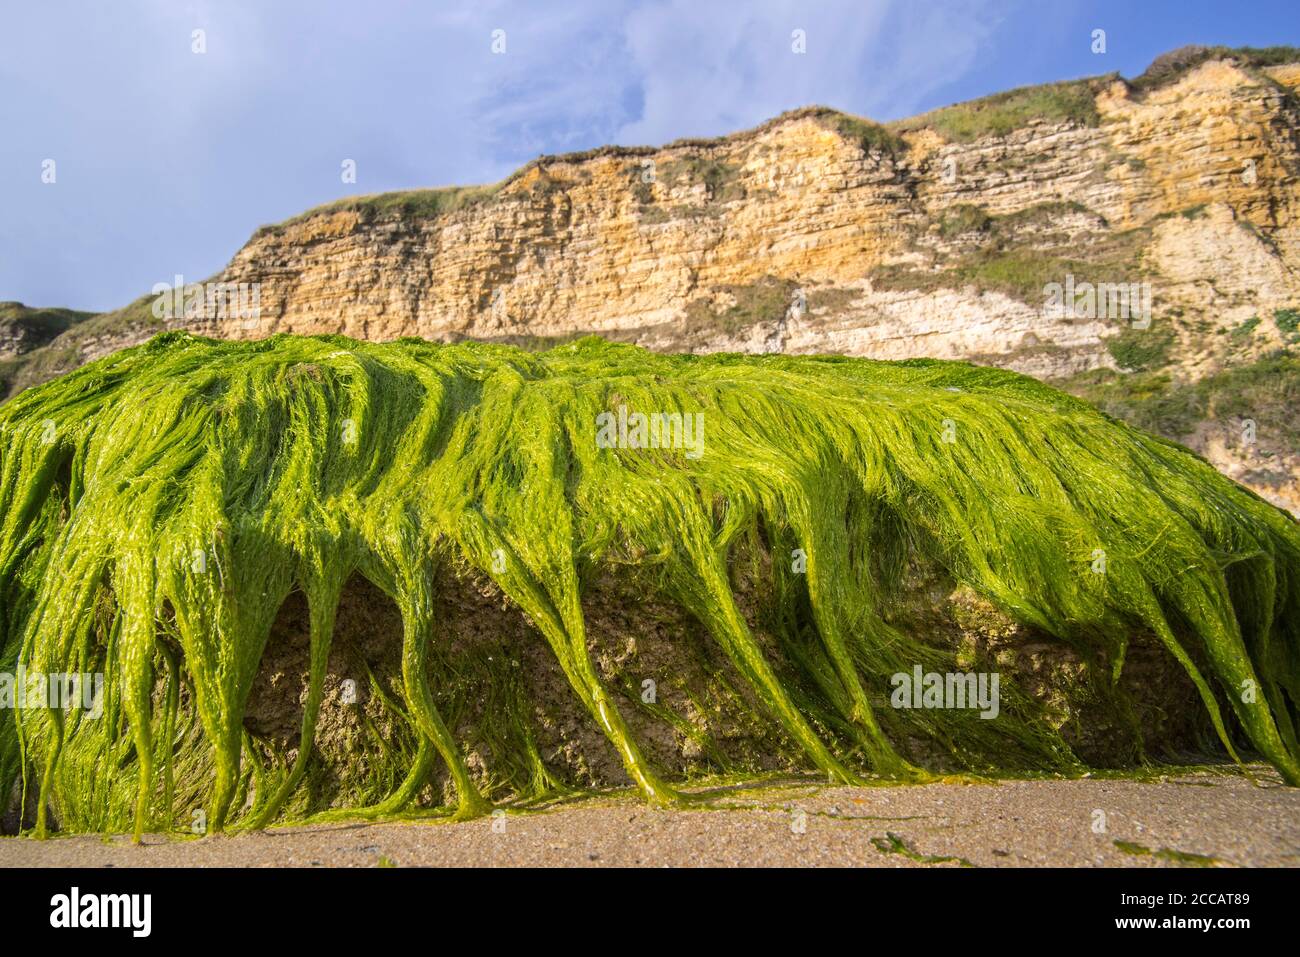 Klumpen von Enteromorpha spec. / Ulva spec., Grünalge Arten von Kutweed (Ulvaceae) wächst auf Felsen am Strand bei Ebbe, Normandie, Frankreich Stockfoto